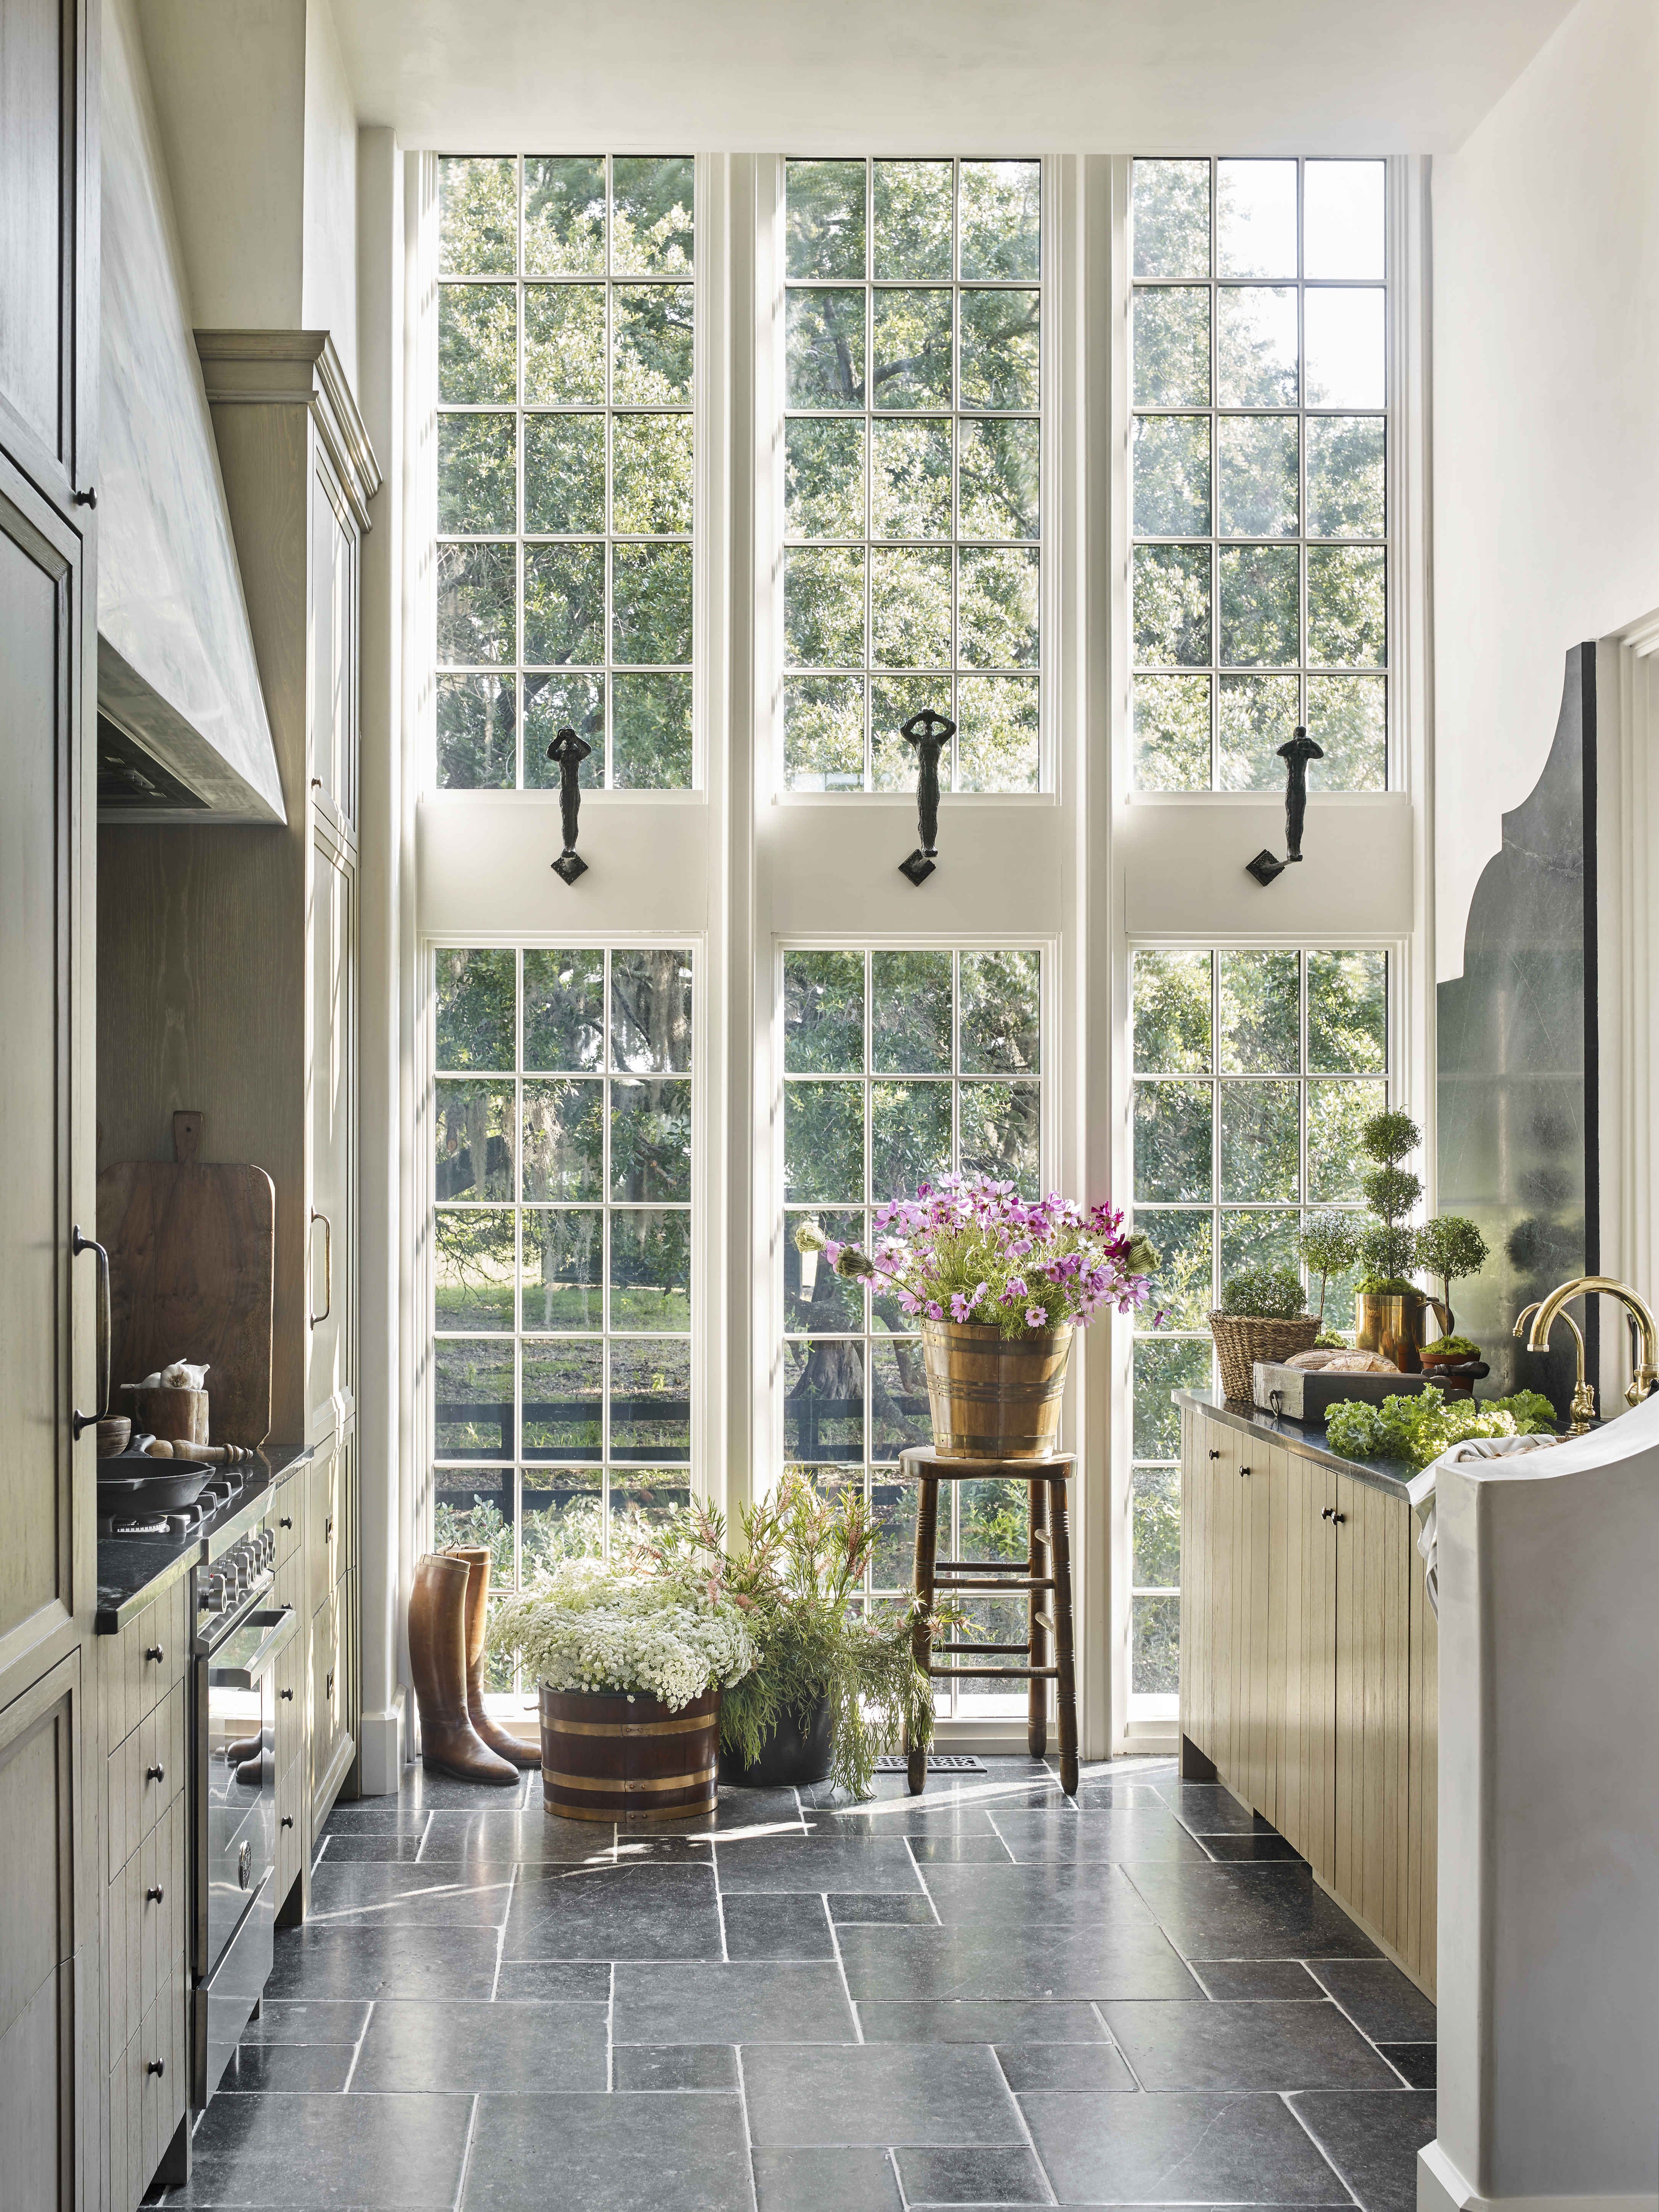 Which Kitchen Floor Tiles Are Best? Top 10 Kitchen Design Ideas